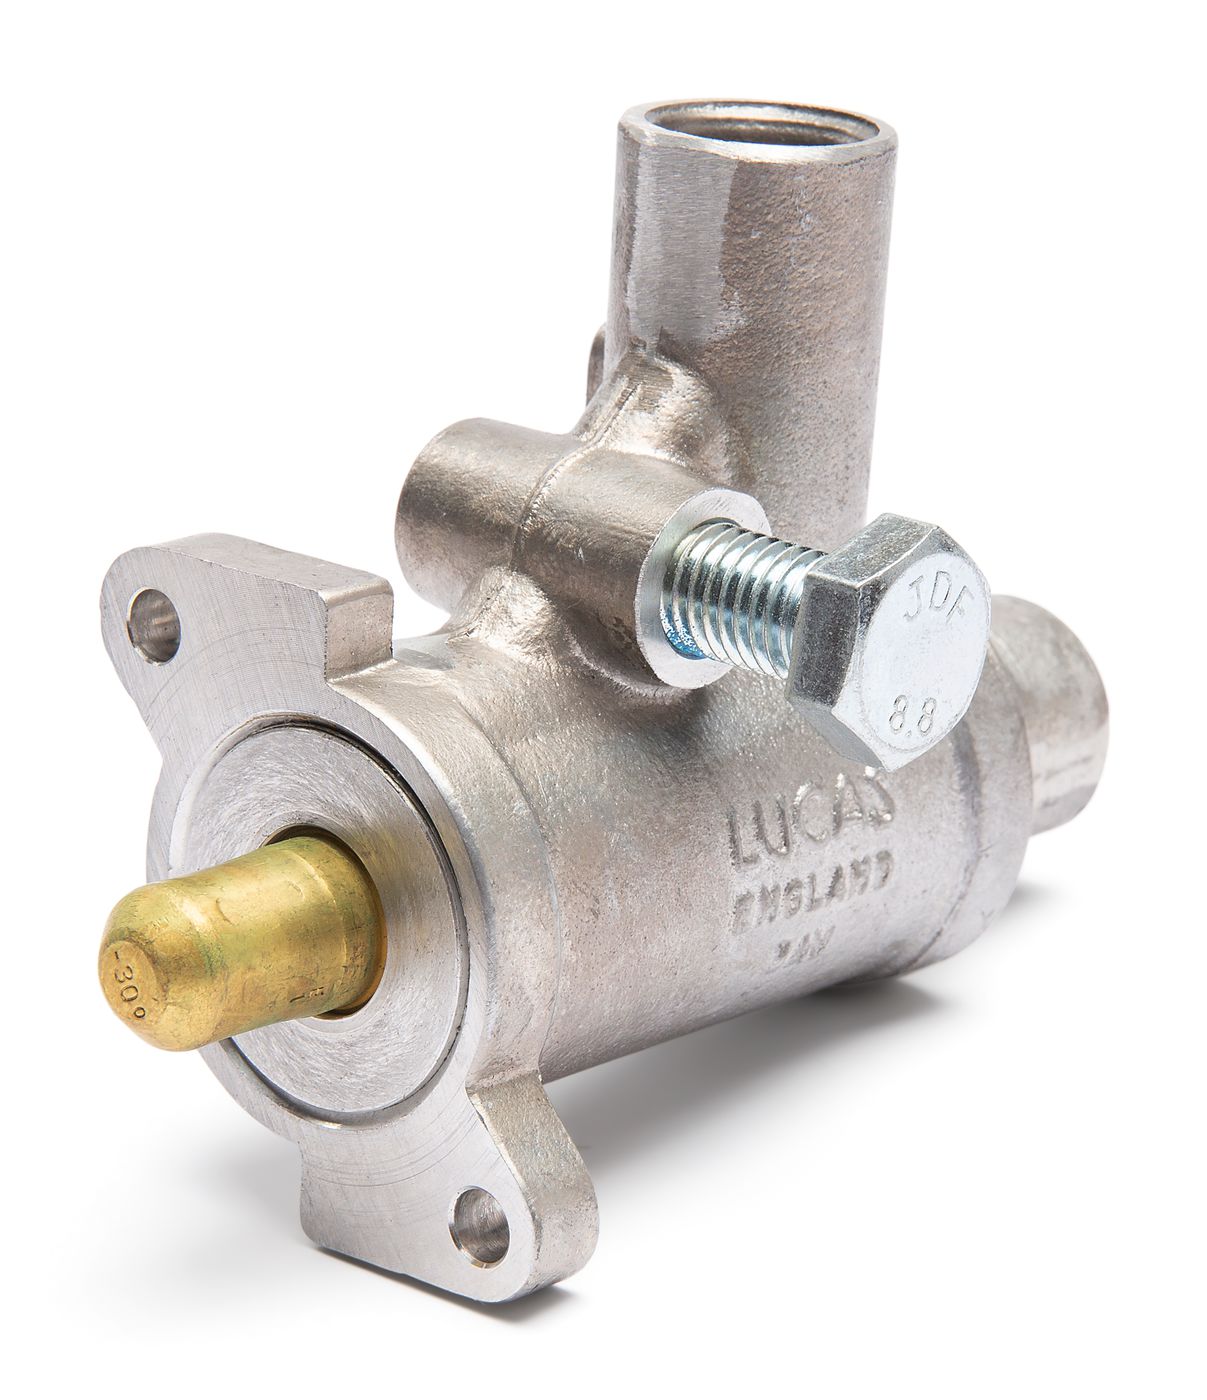 Zusatzluftventil
Auxiliary air valve
Soupape d'aération supplé